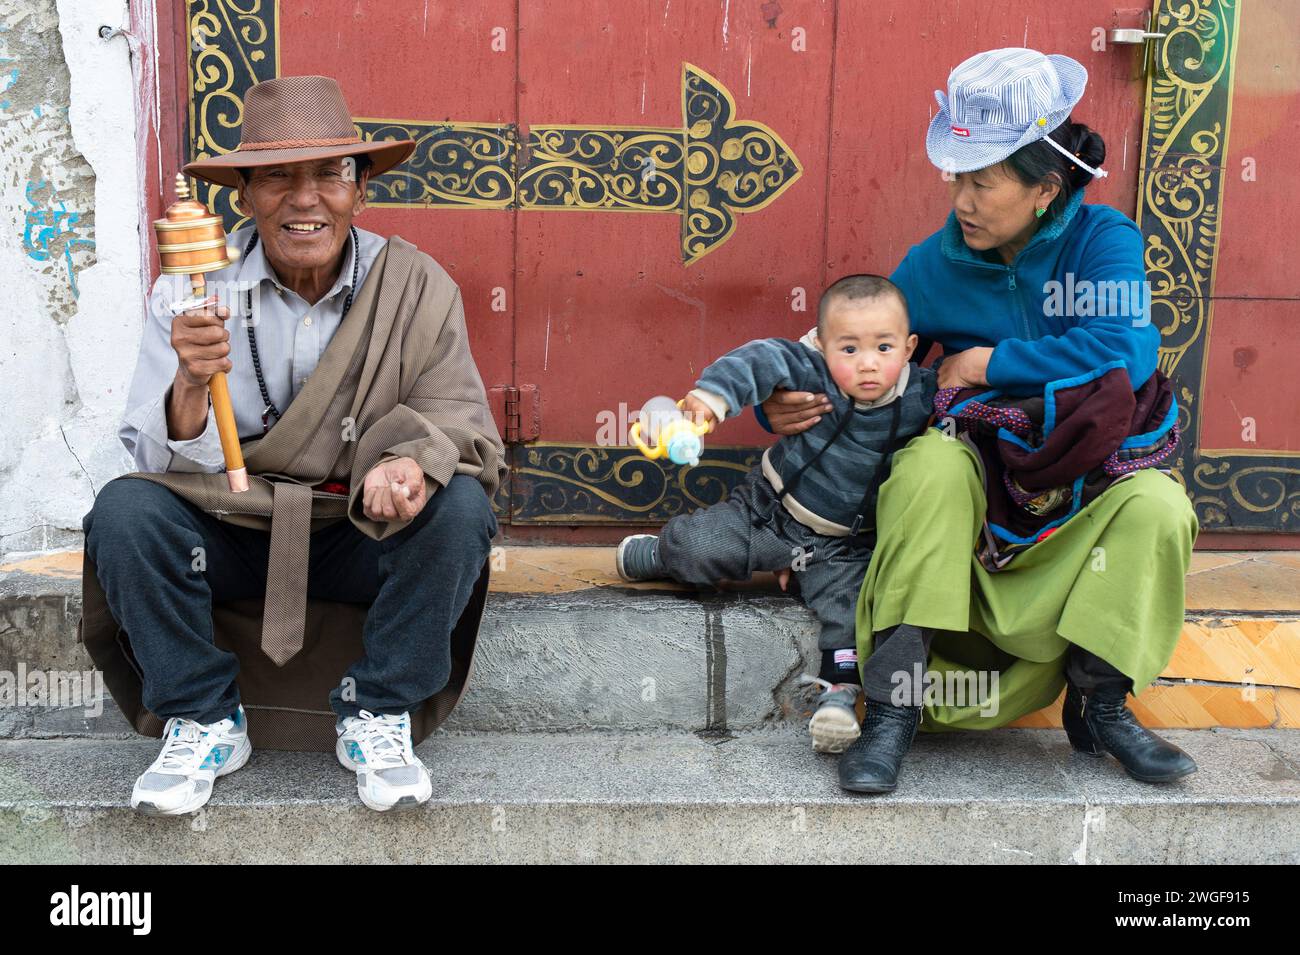 Un hombre que sostiene una rueda de oración tibetana se sienta en escaleras de piedra con su esposa e hijo en la plaza Barkhor, Lhasa. Foto de stock